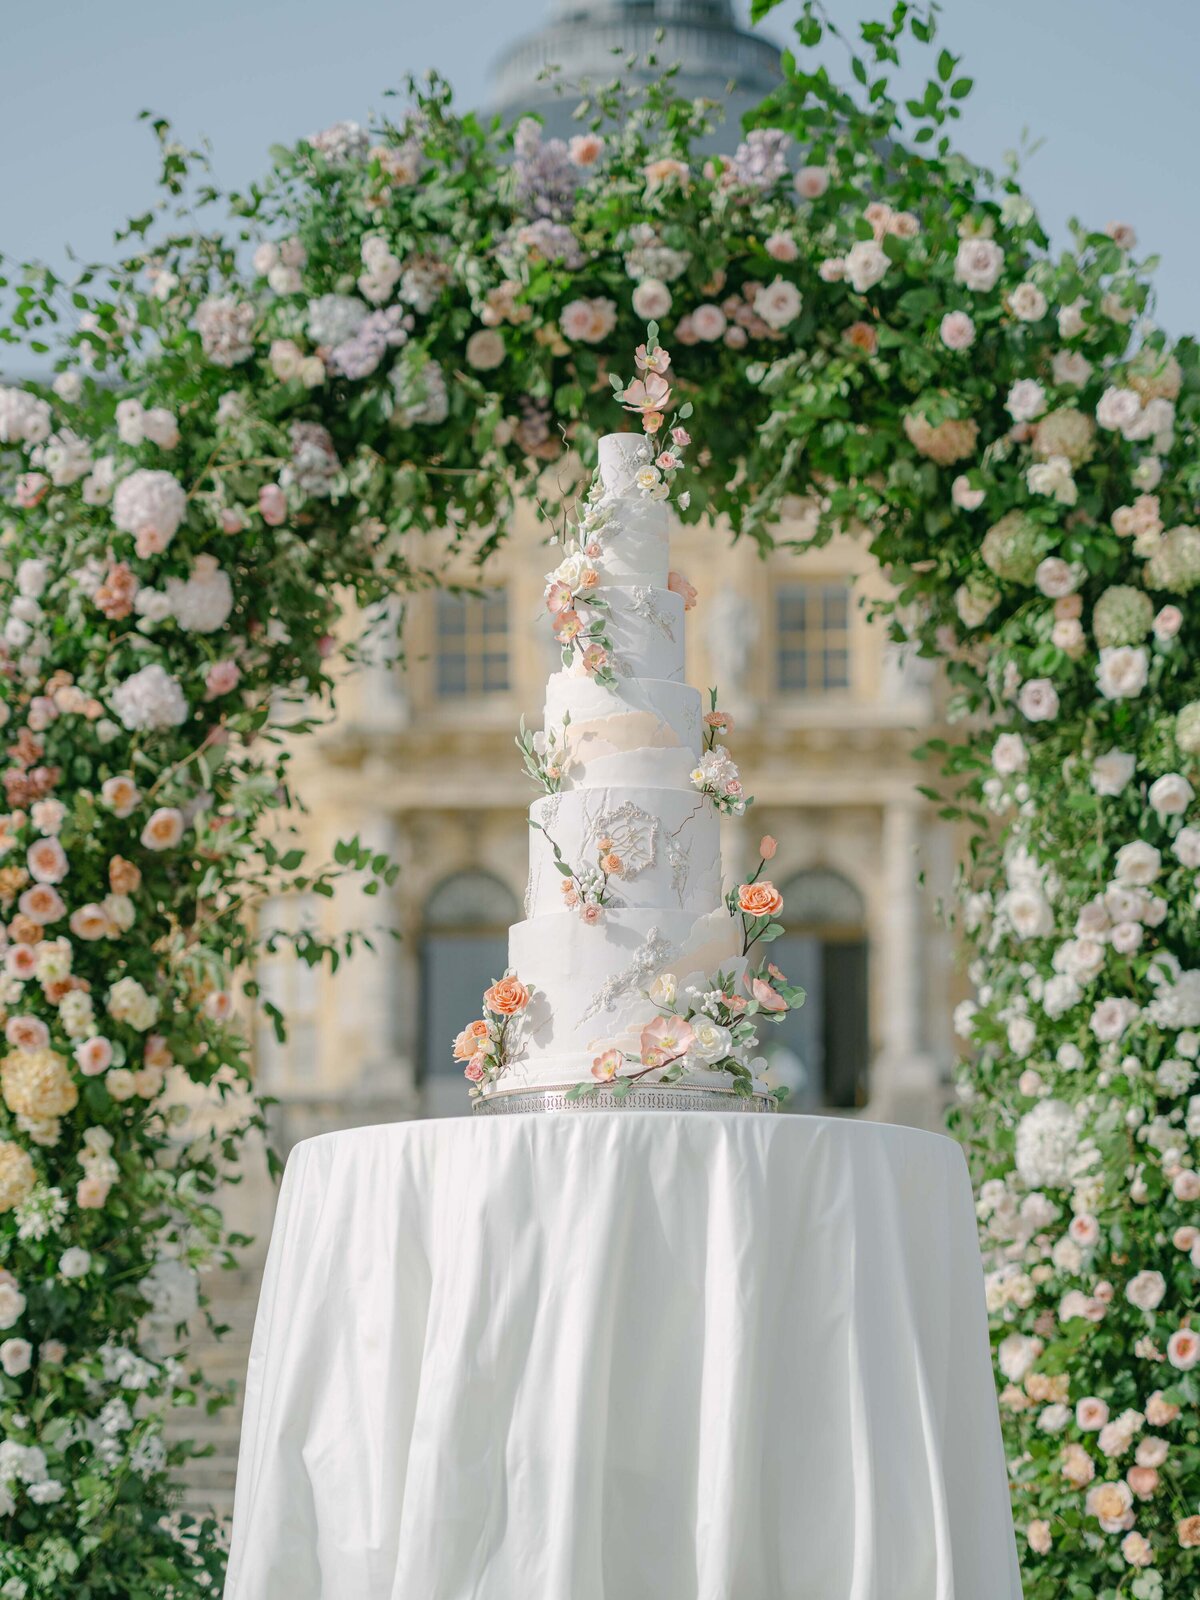 Chateau-Vaux-le-vicomte-wedding-florist-FLORAISON12